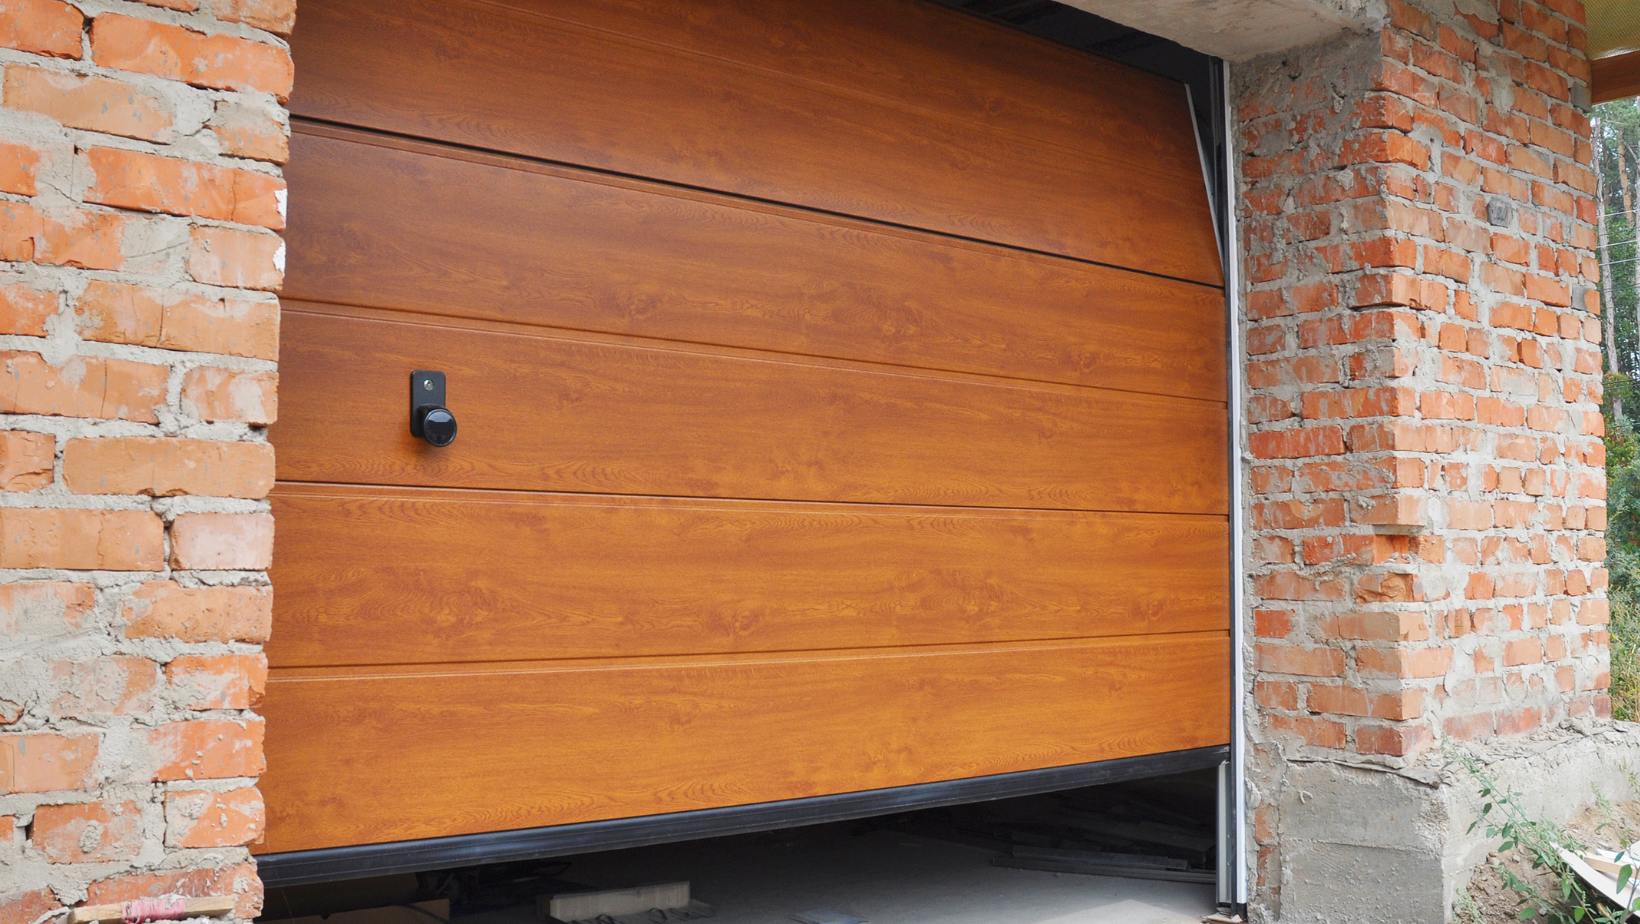 Why Choose Garage Doors from Bestar?